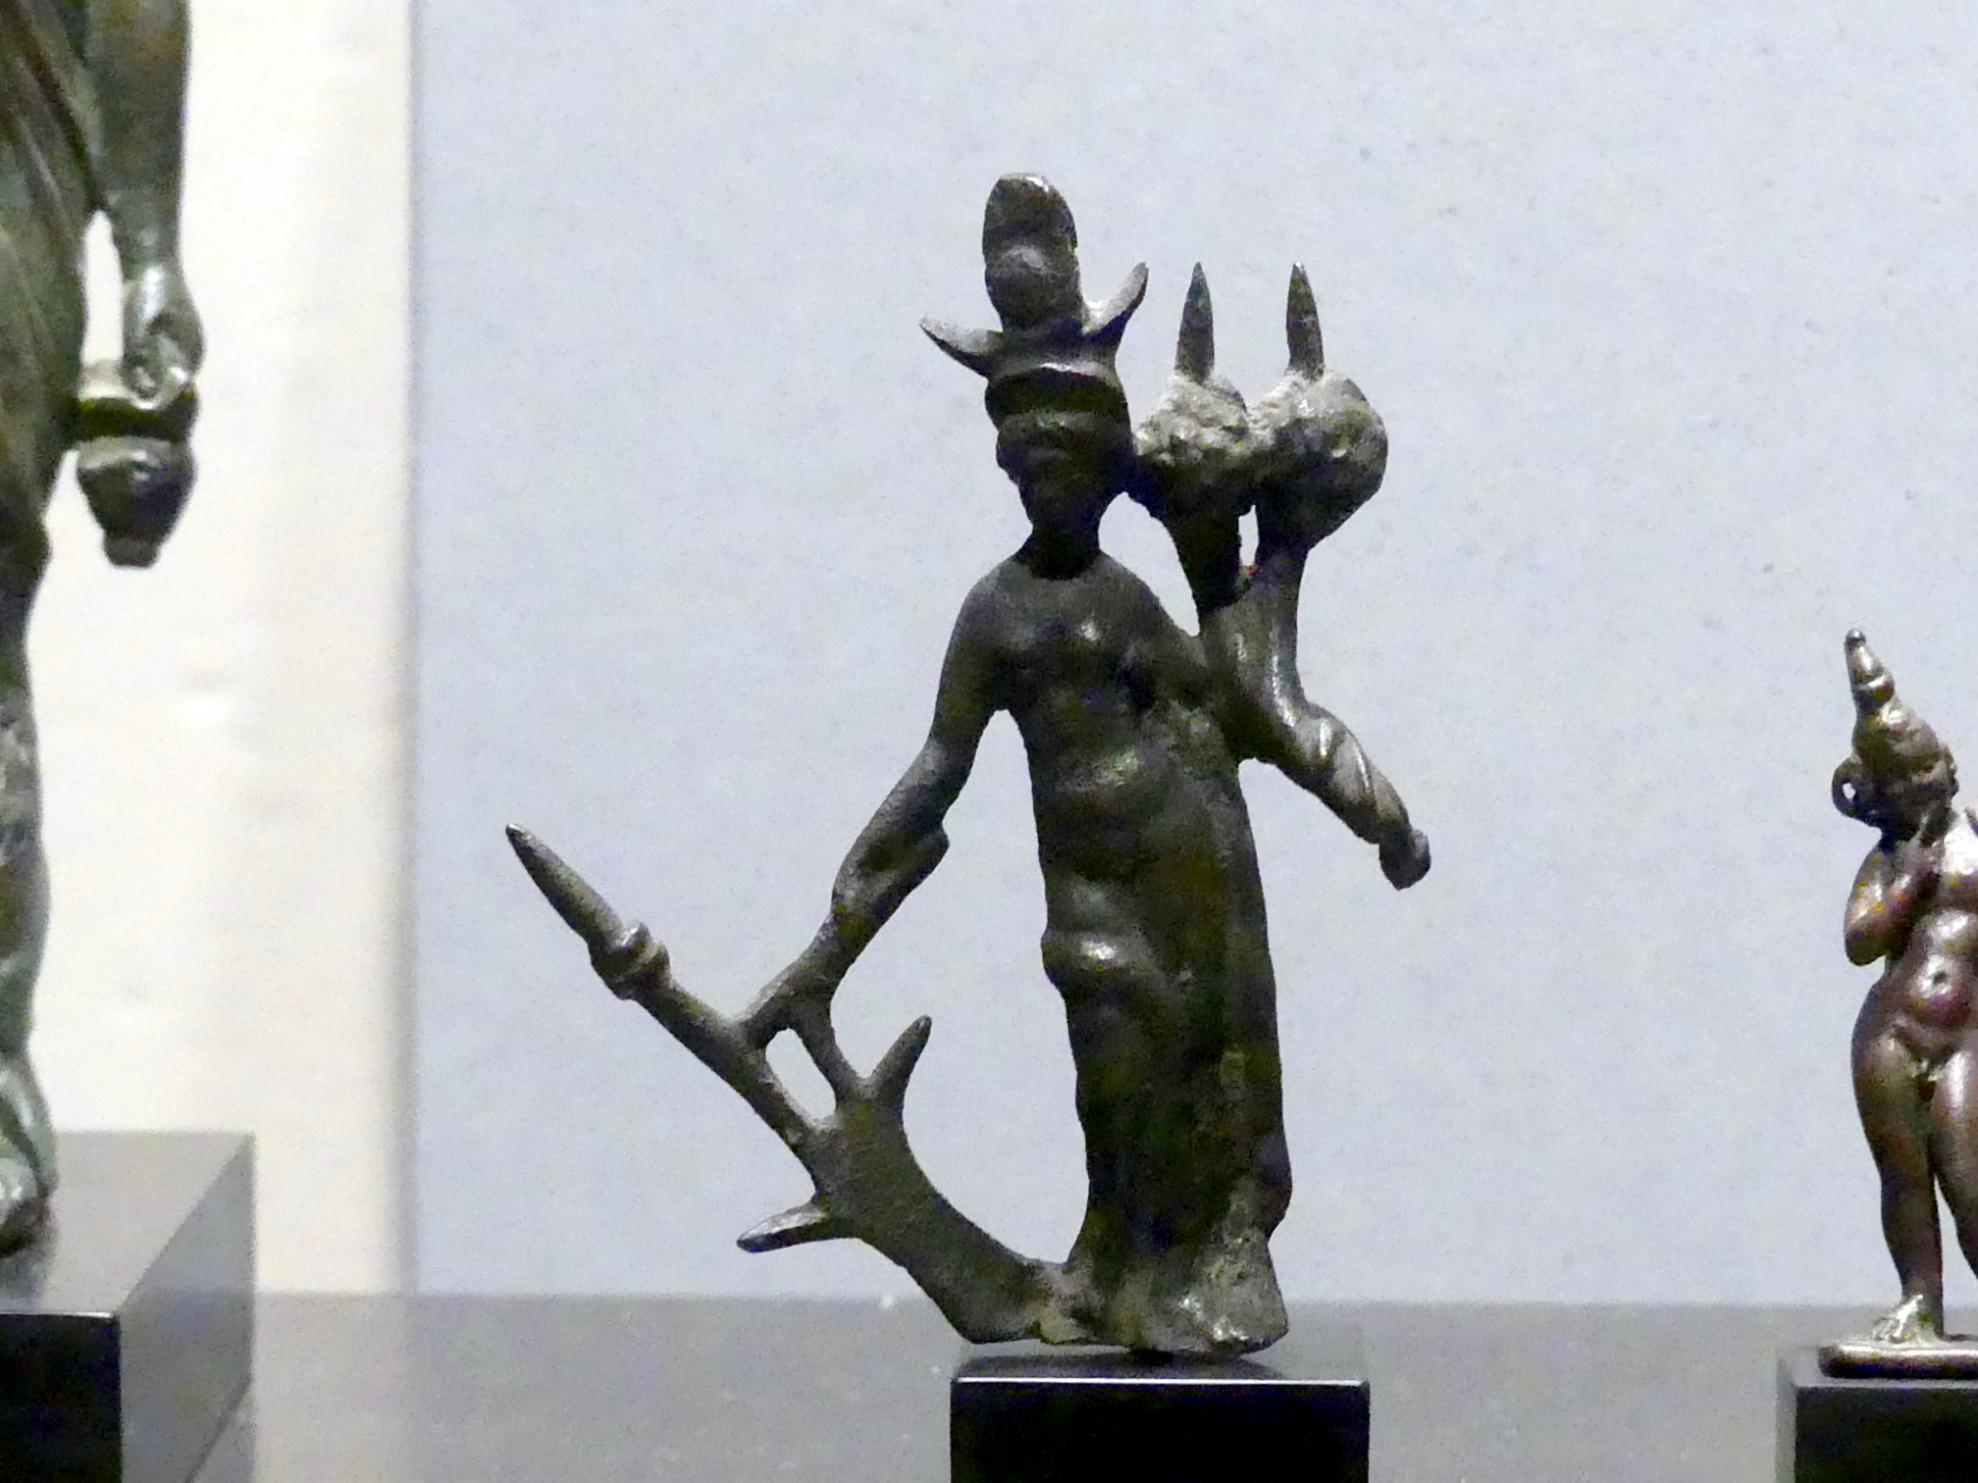 Figur der Göttin Isis Pelagia mit Füllhorn und Steuerruder, Römische Kaiserzeit, 27 v. Chr. - 54 n. Chr., 200 - 400, Bild 1/2